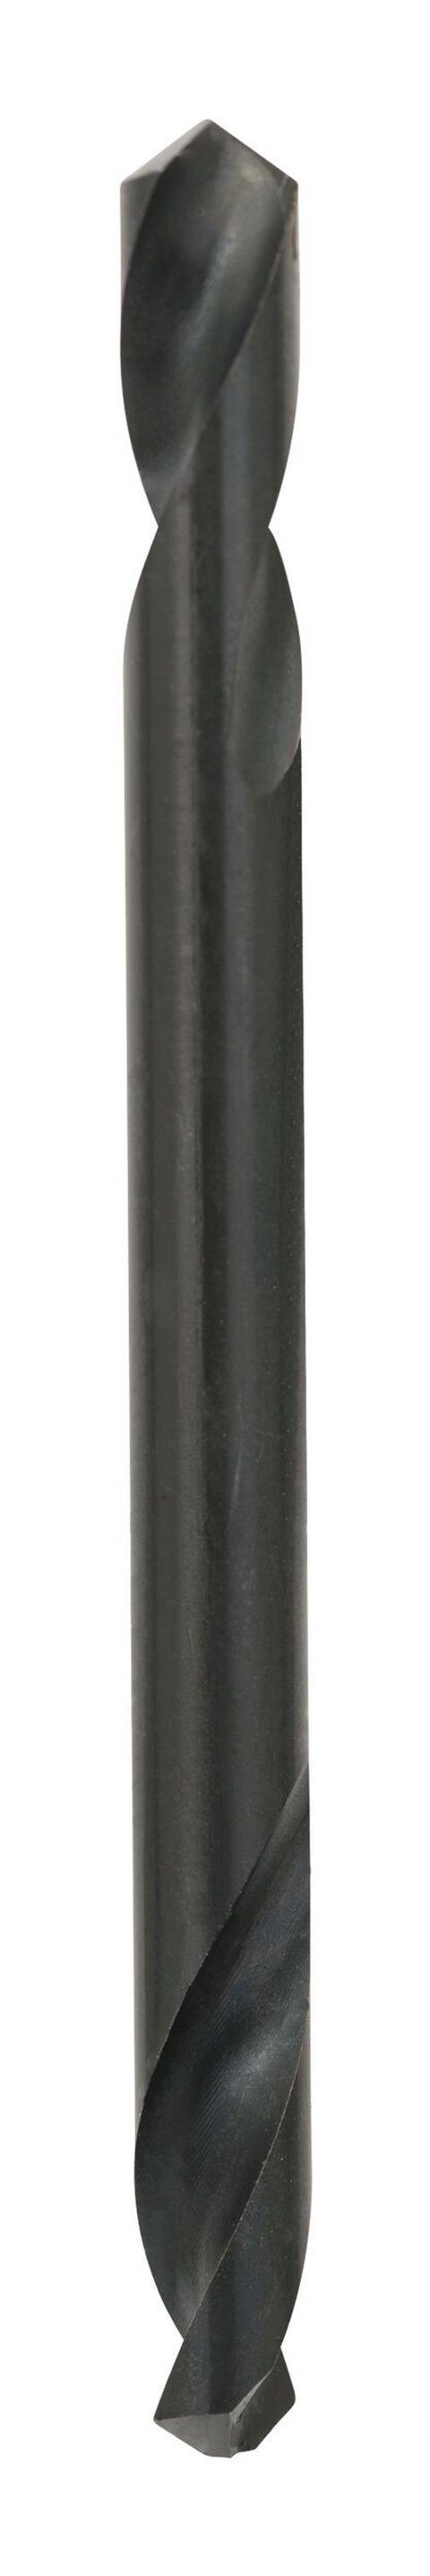 BOSCH Metallbohrer, (10 Stück), - 17 mm 10er-Pack 62 HSS-G x Doppelendbohrer x - 4,8